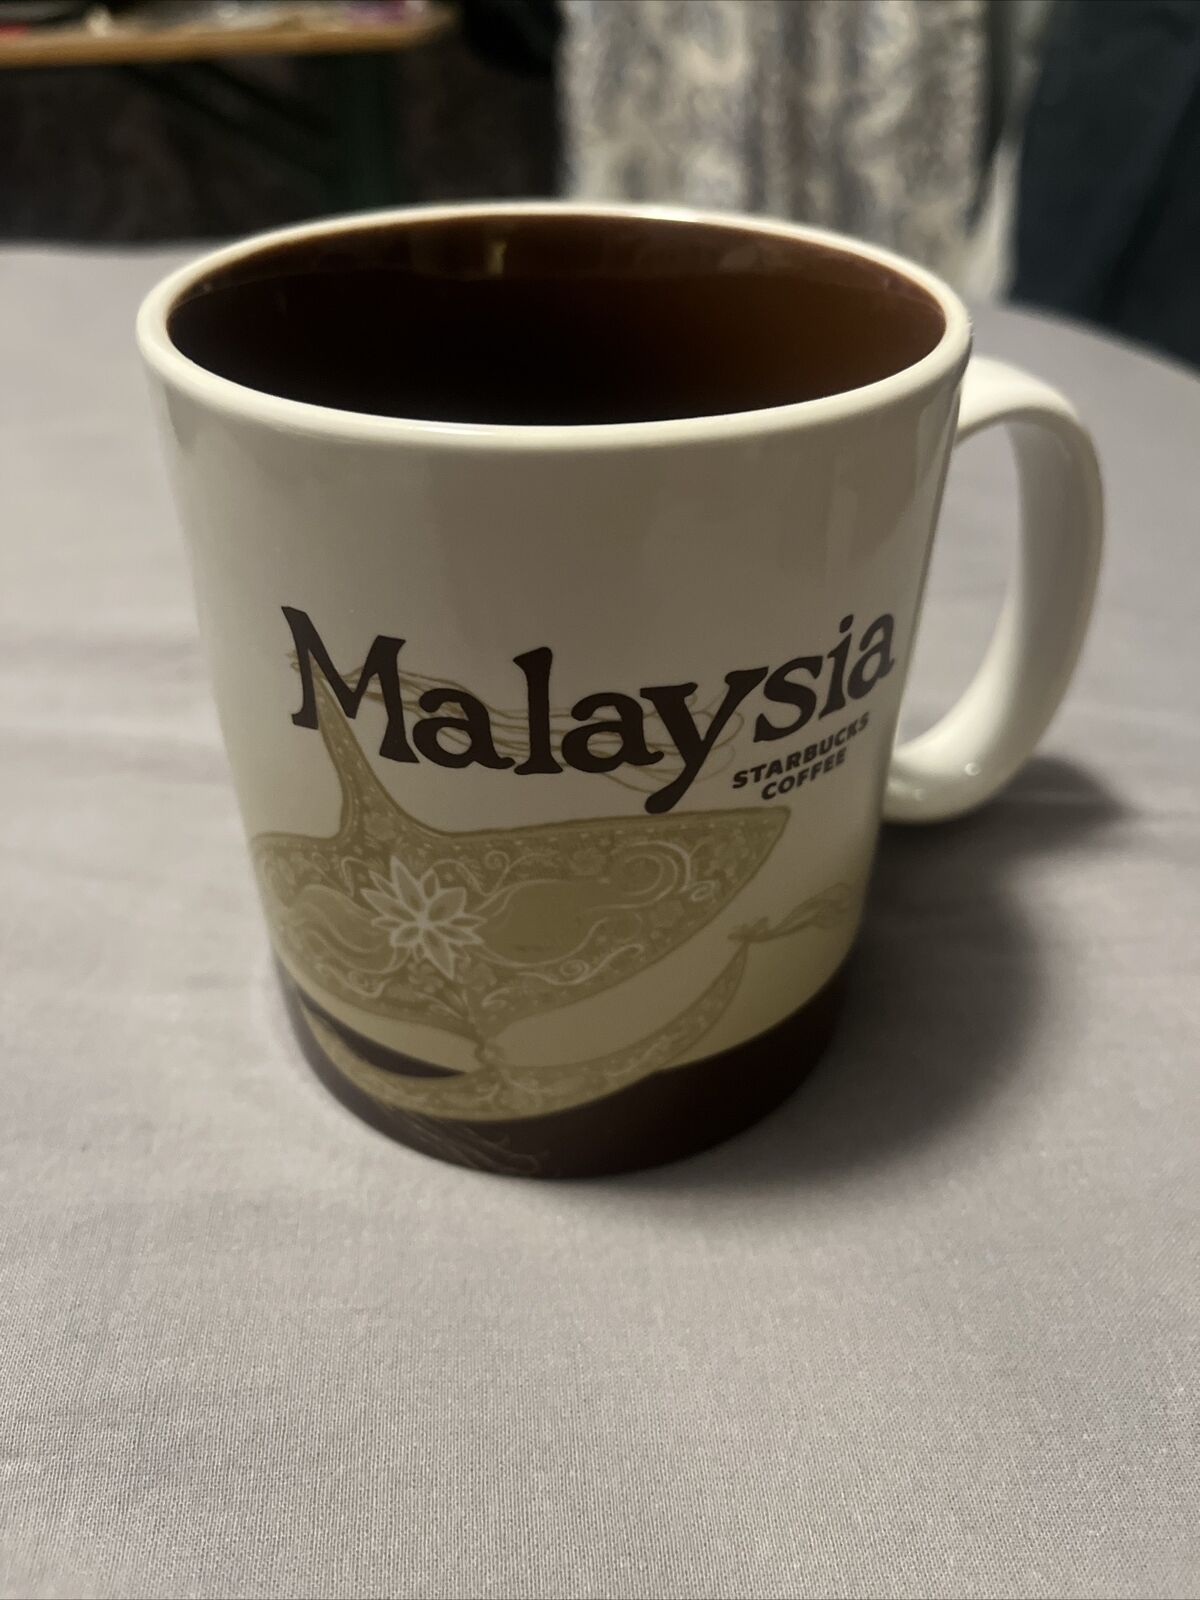 STARBUCKS GLOBAL ICON COLLECTOR SERIES MALAYSIA COFFEE CUP/MUG 2013 16 OZ